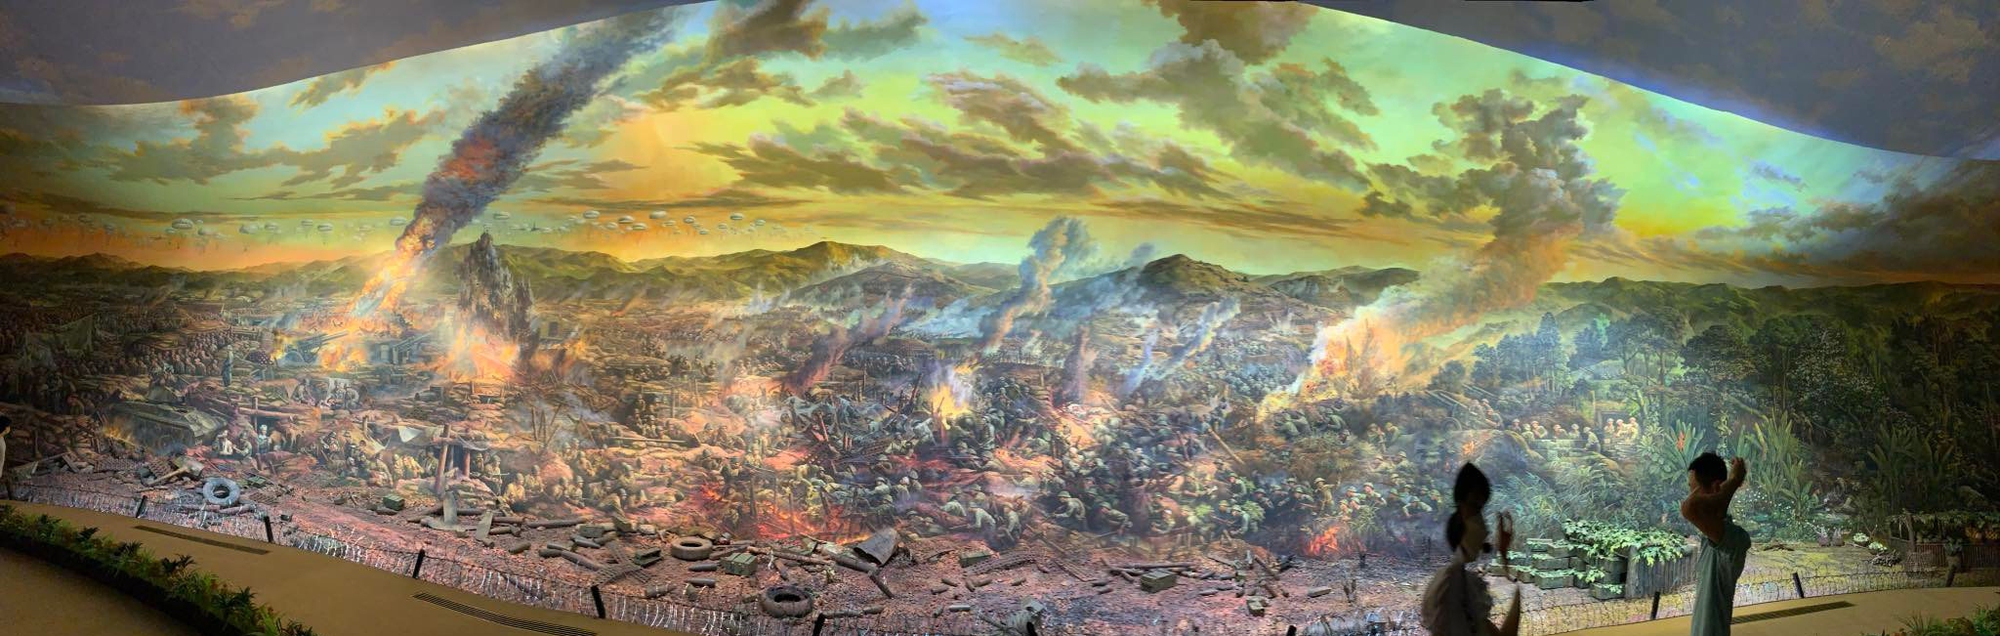 Ấn tượng tranh panorama tái hiện Chiến thắng Điện Biên - Ảnh 3.